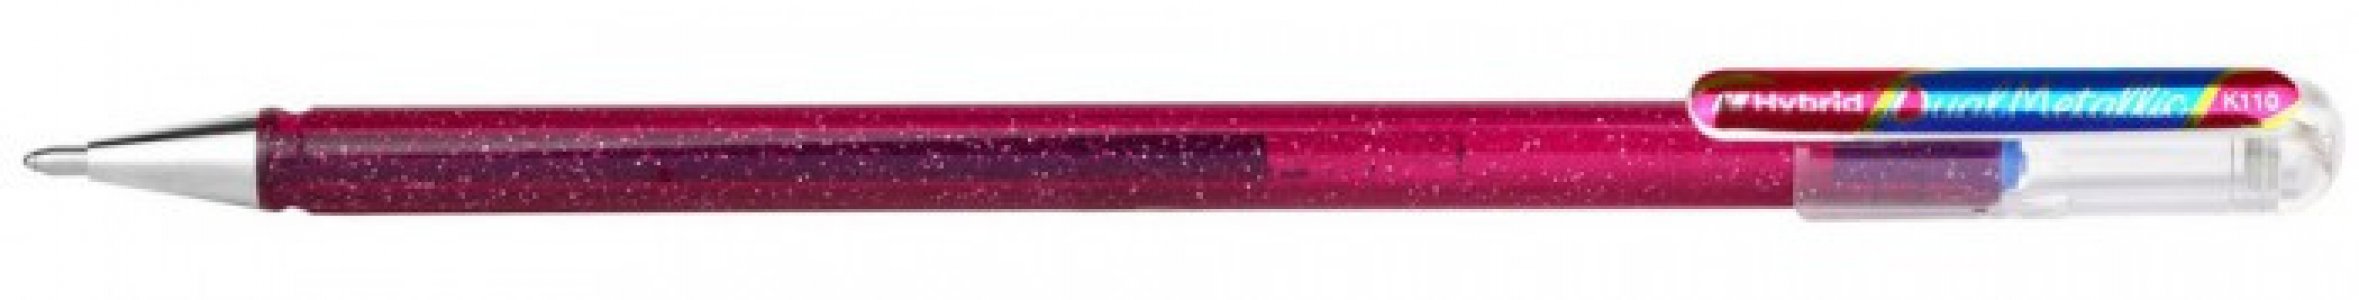 Ручка гелевая Hybrid Dual Metallic с чернилами Хамелеон 1.0 мм 5 шт. Pentel